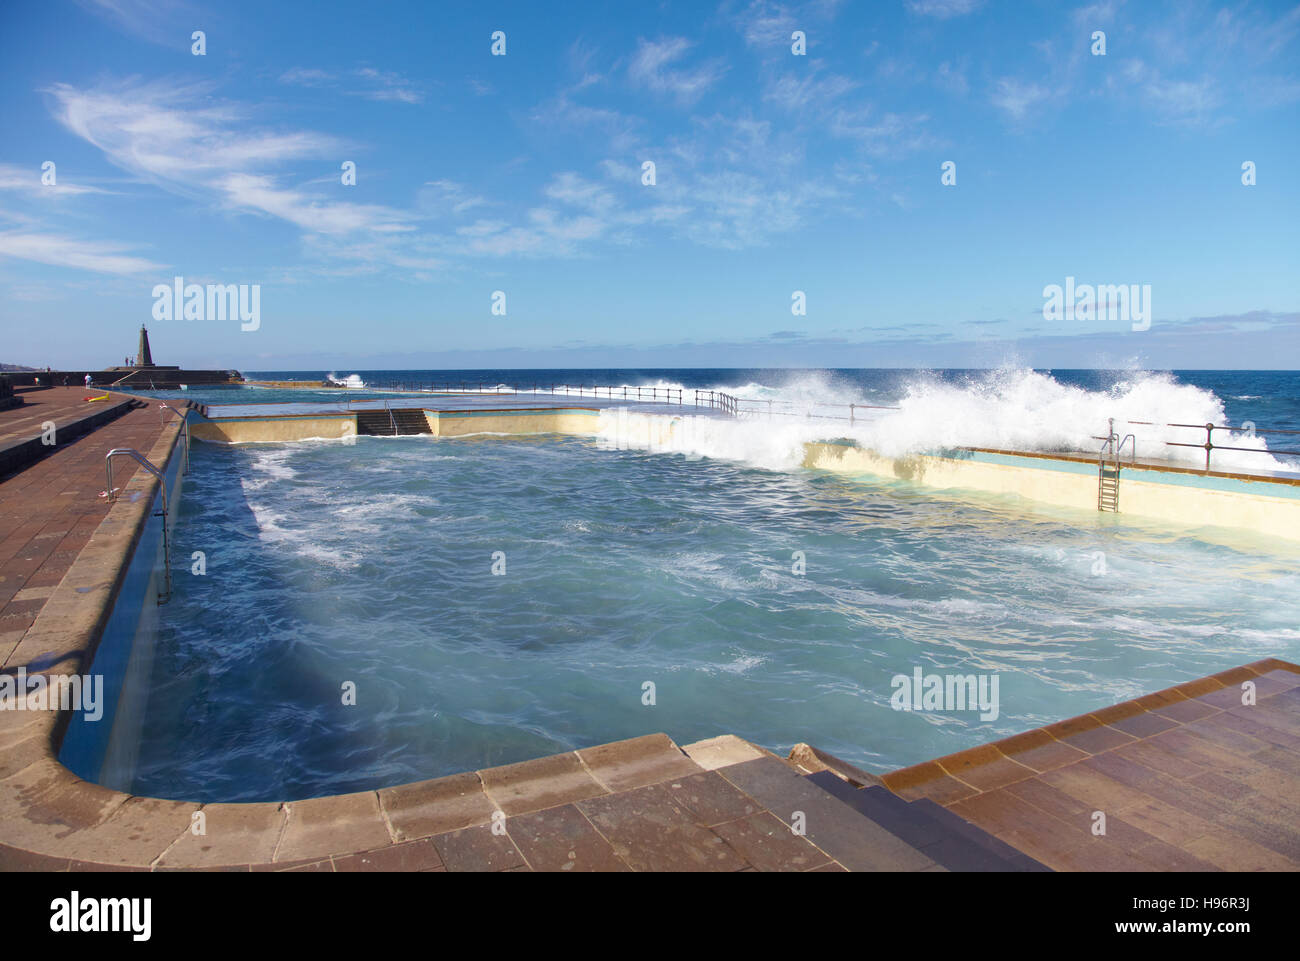 Seawater sloshing into a seawater pool at the Atlantic Ocean in Bajamar, Tenerife, Spain Stock Photo